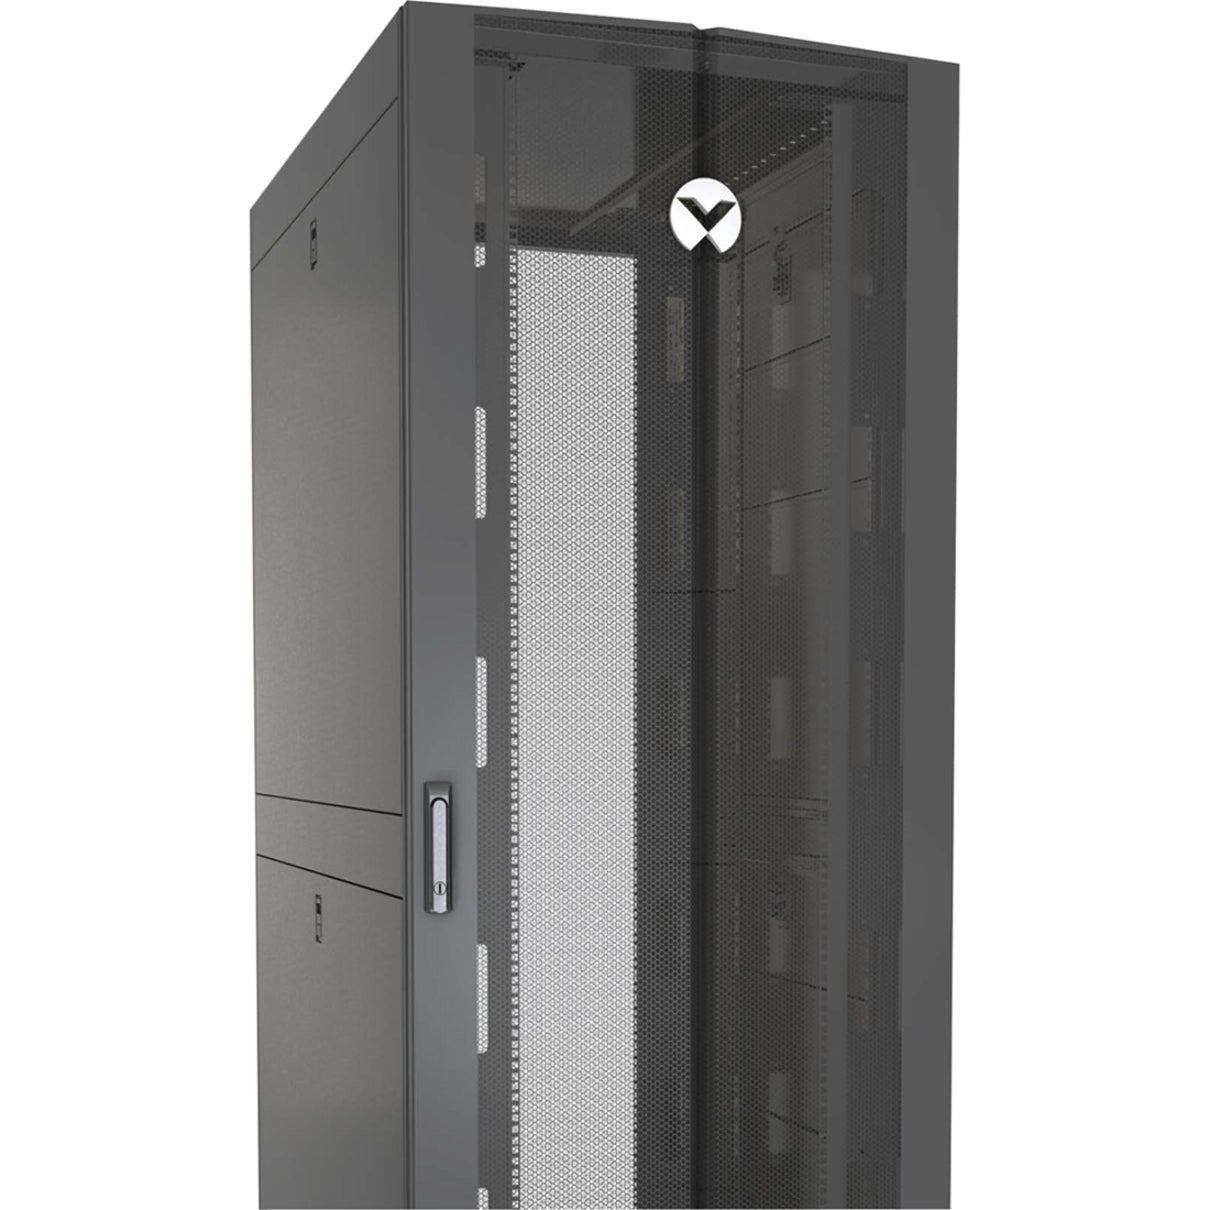 VERTIV VR3350SP VR - 42U with Shock Packaging, Rack Cabinet for Servers